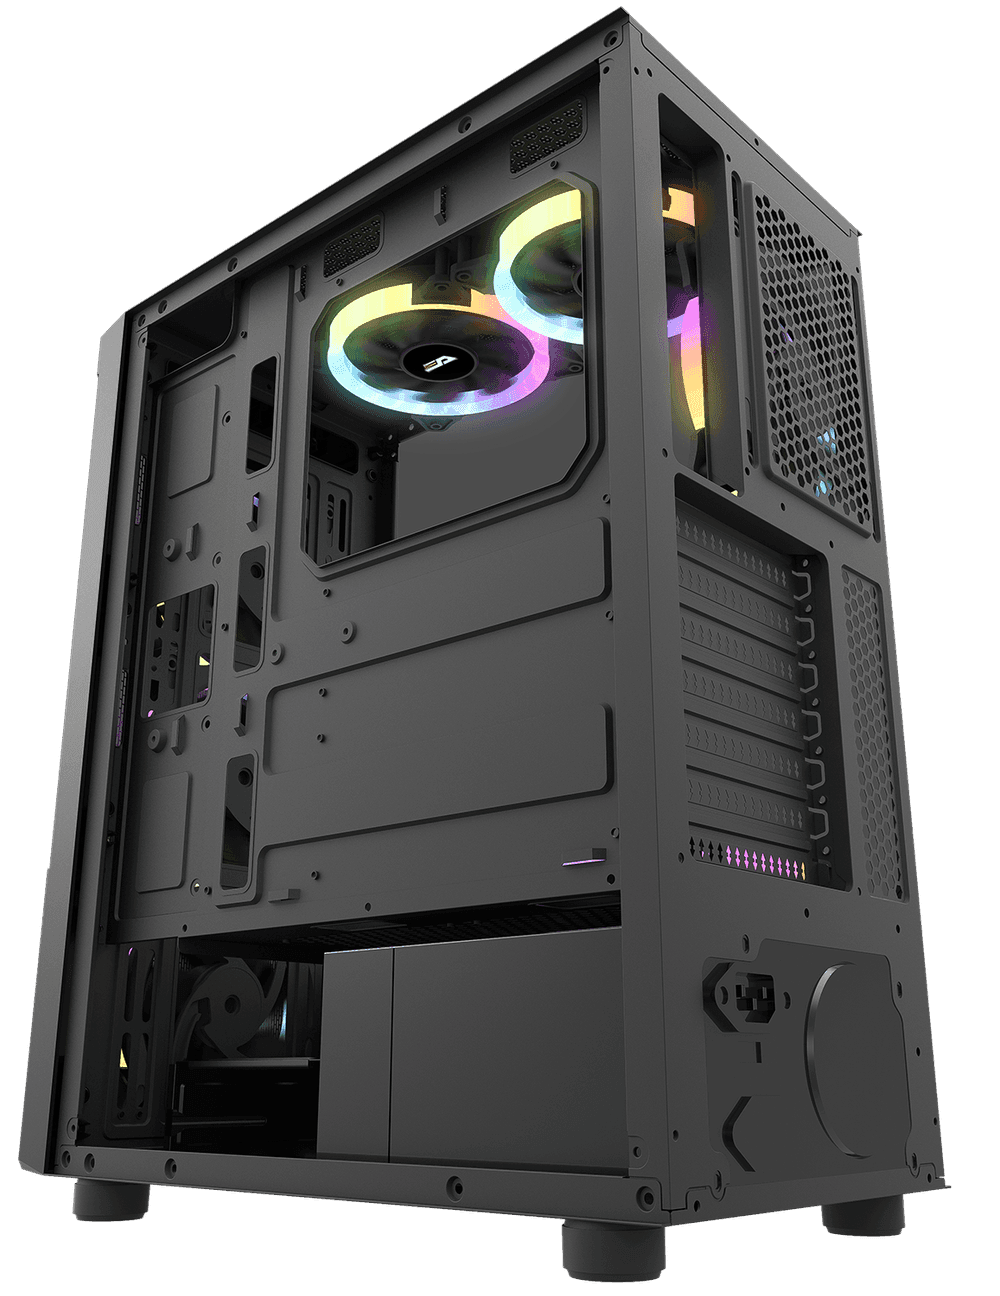 Pollux ATX PC Case